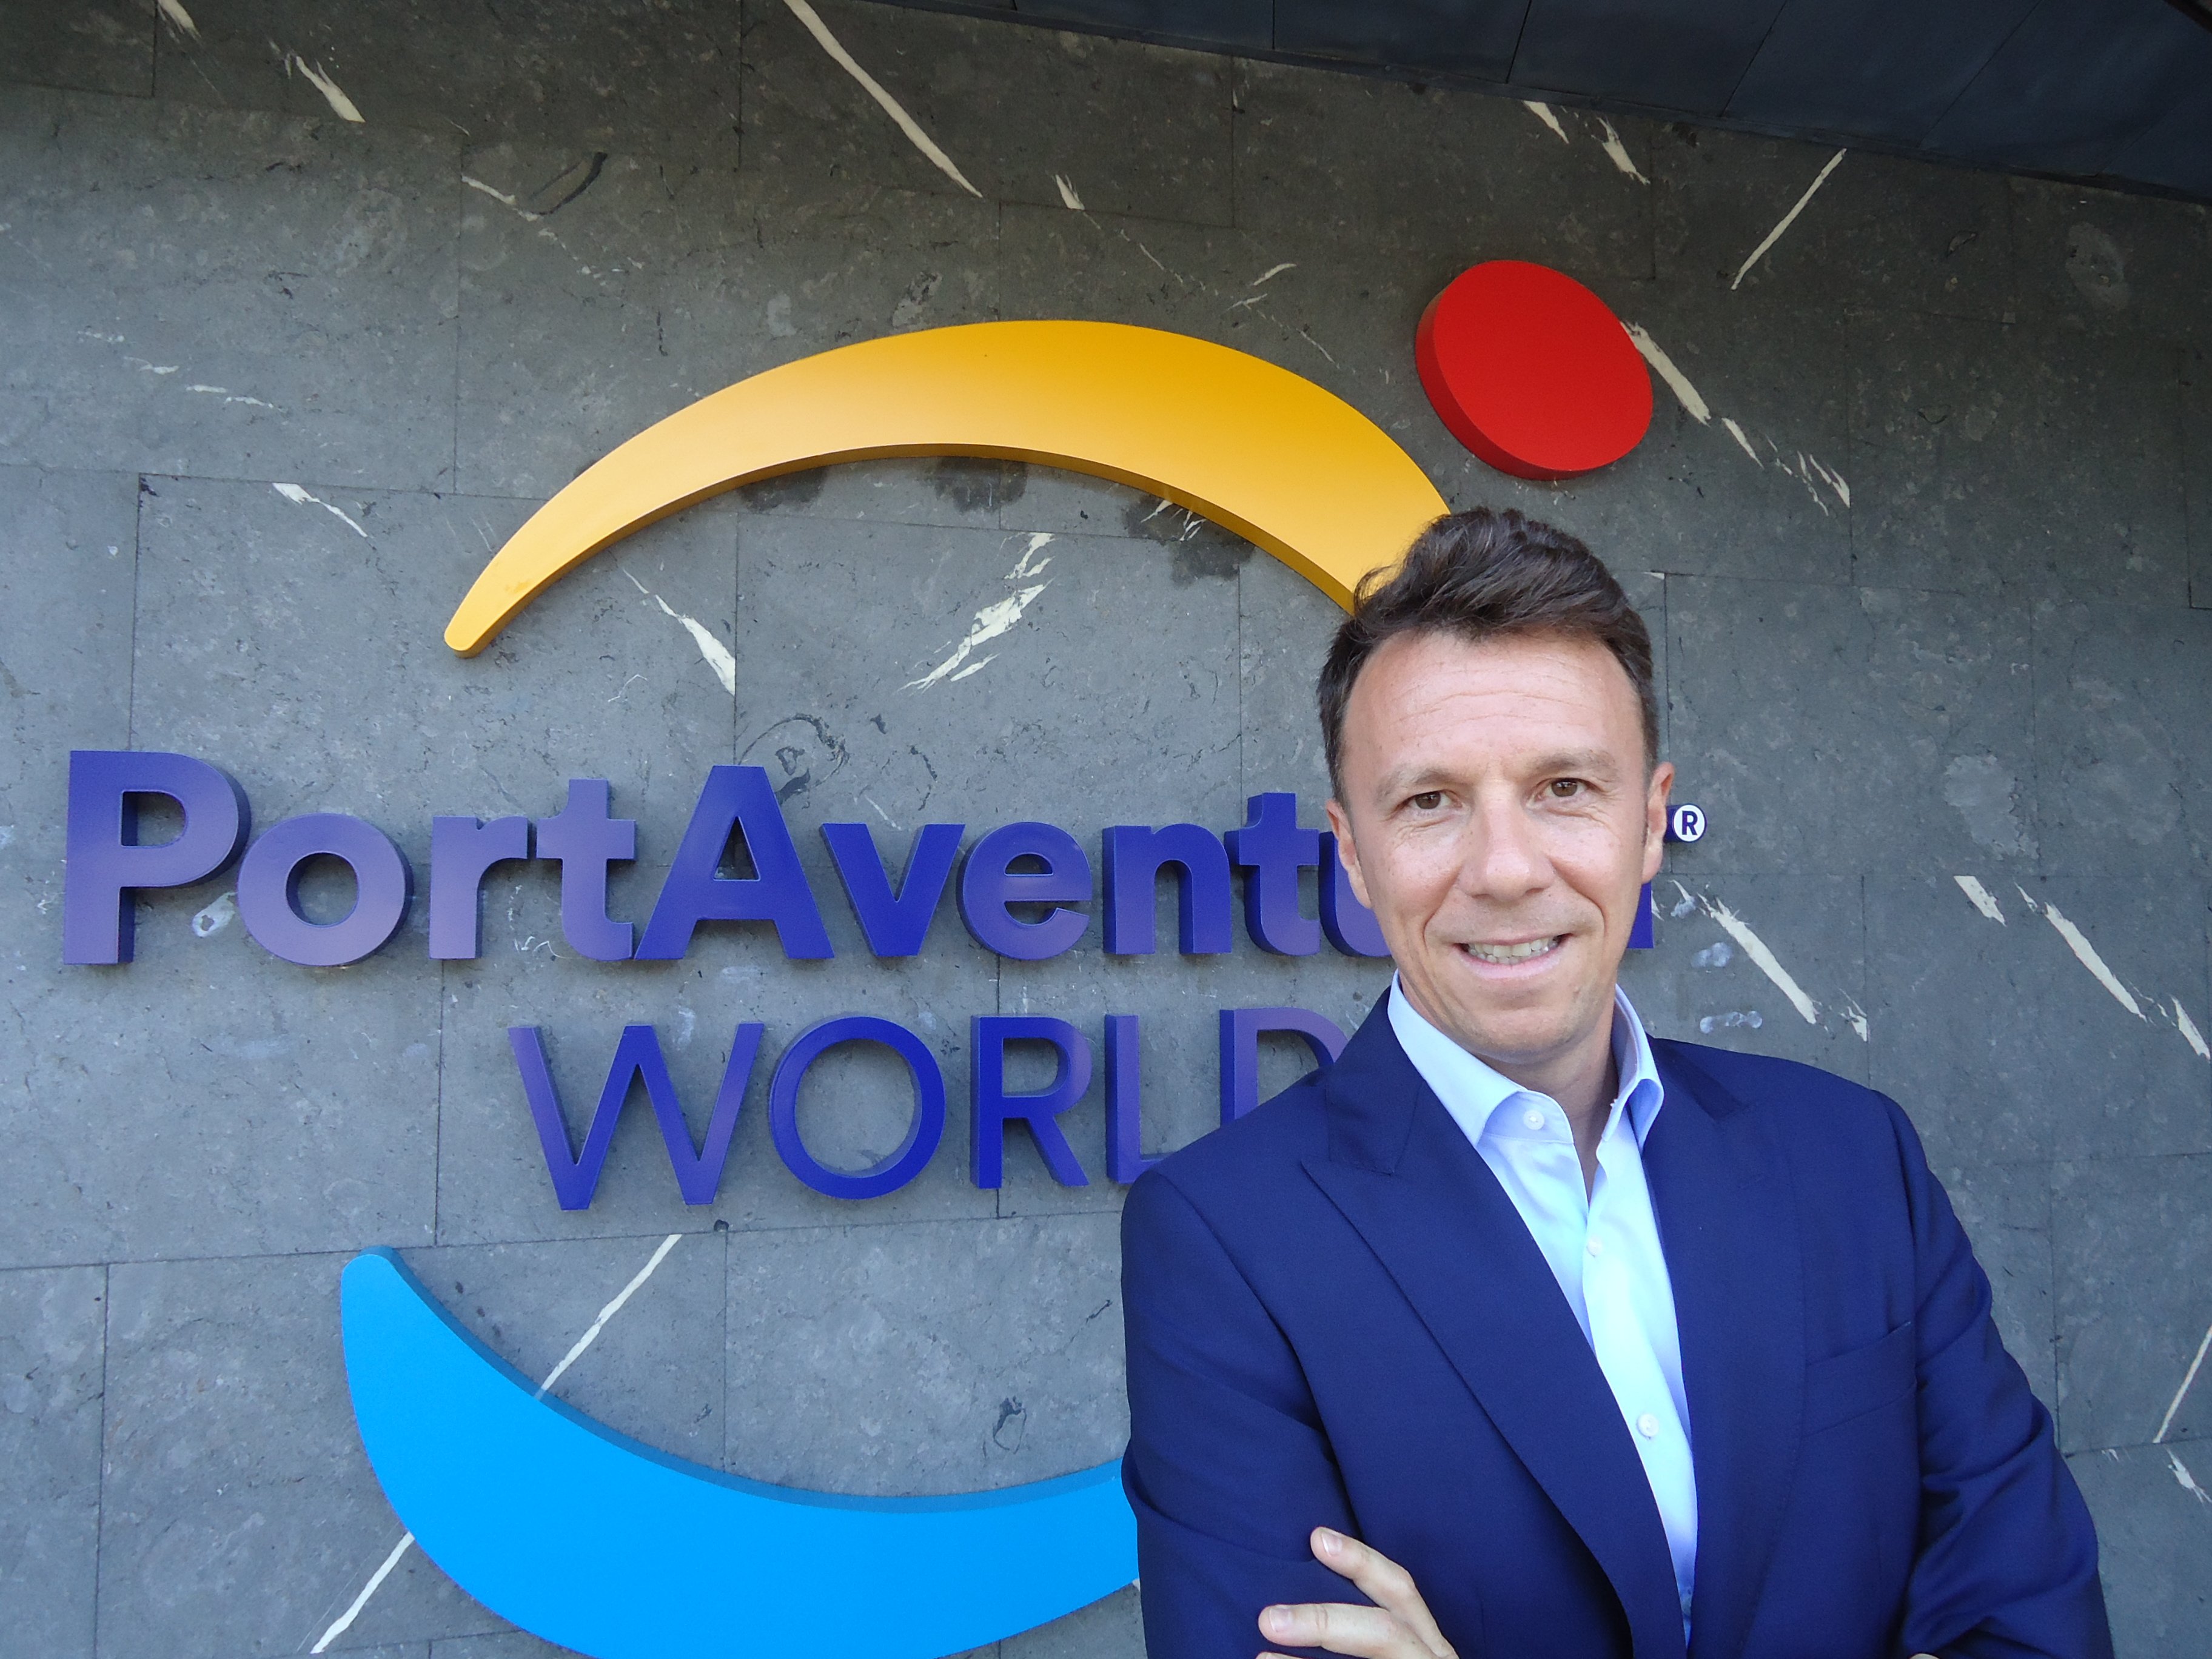 PortAventura World incorpora a David García a su Consejo de Administración